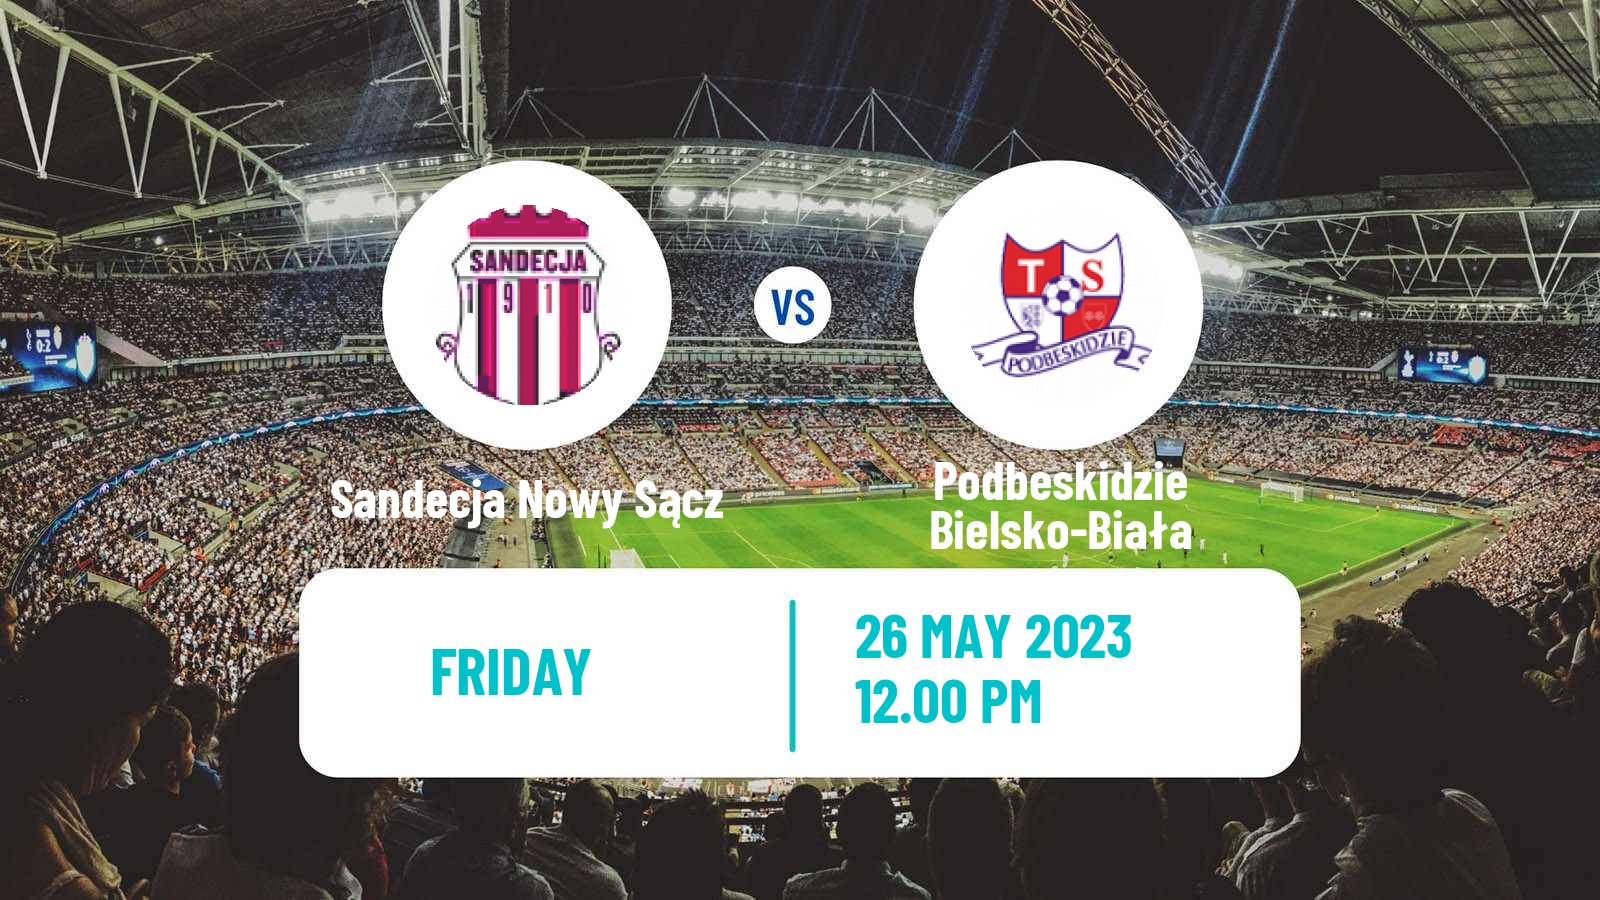 Soccer Polish Division 1 Sandecja Nowy Sącz - Podbeskidzie Bielsko-Biała